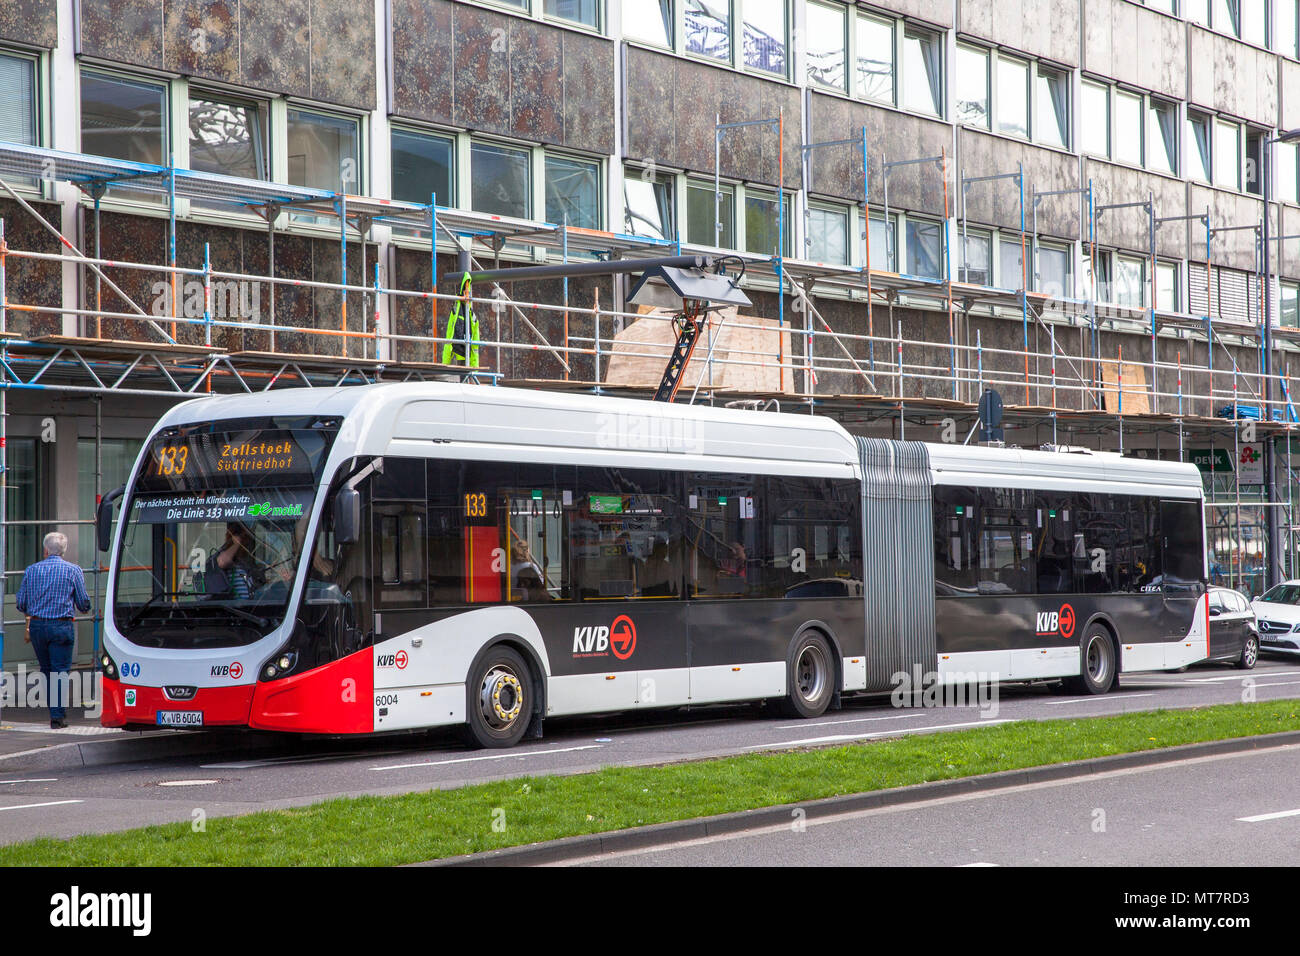 Bus de la ligne 133 à la station de recharge à Breslauer Platz, Cologne, Allemagne. Elektrobus der Linie 133 un eines Ladestation suis Breslauer P Banque D'Images